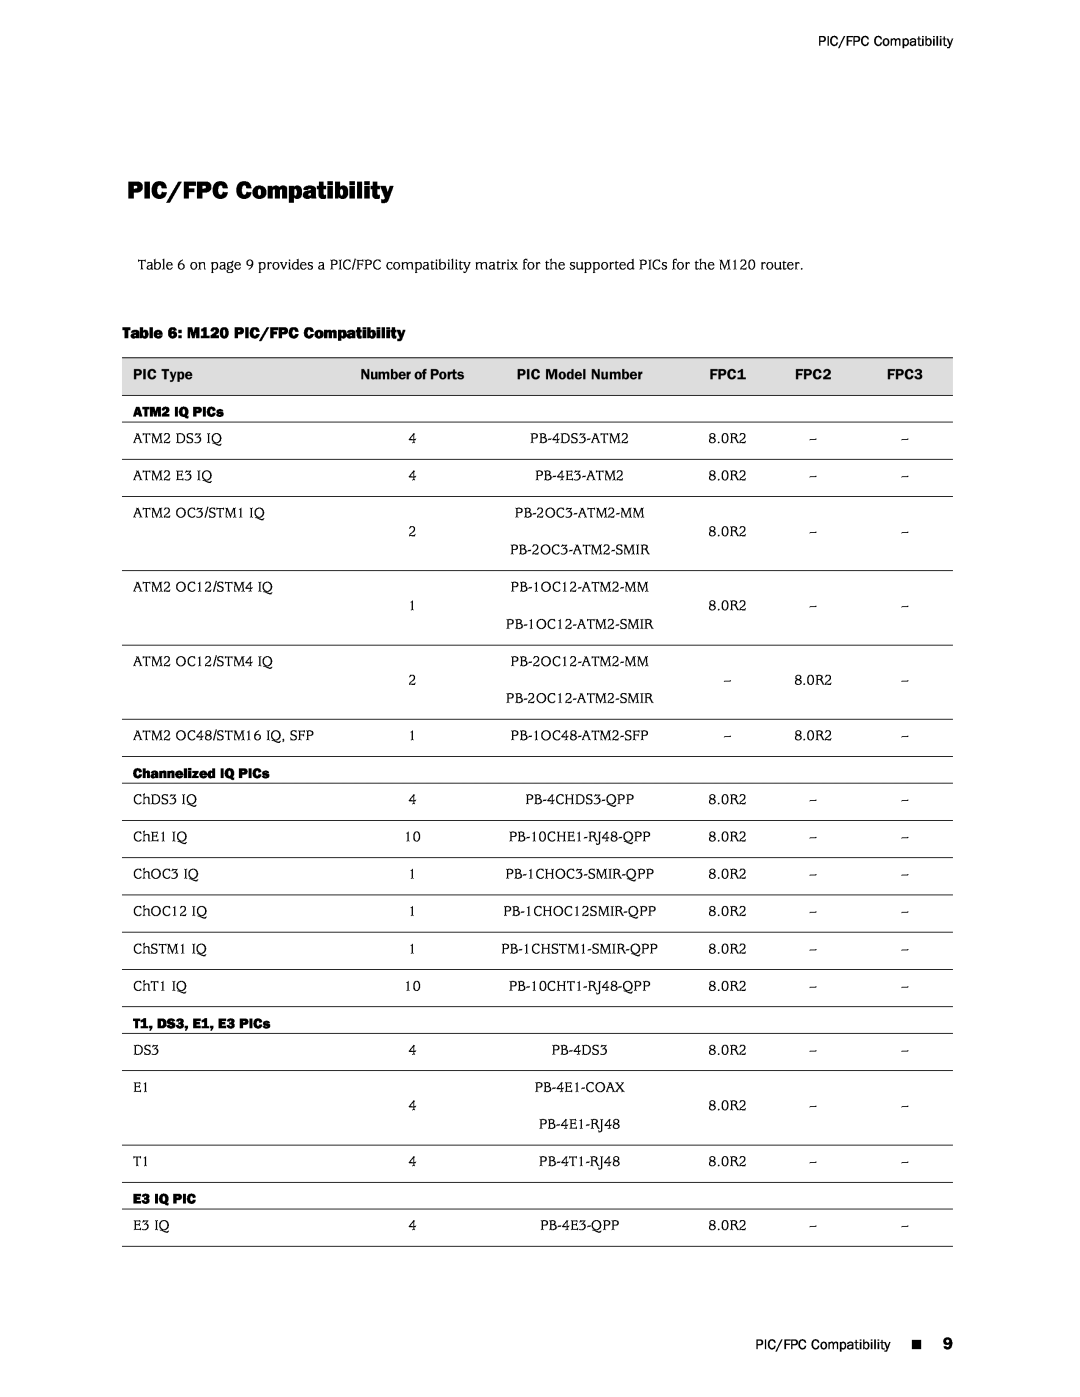 Juniper Networks M120 PIC/FPC Compatibility, ATM2 IQ PICs, Channelized IQ PICs, T1, DS3, E1, E3 PICs, E3 IQ PIC 